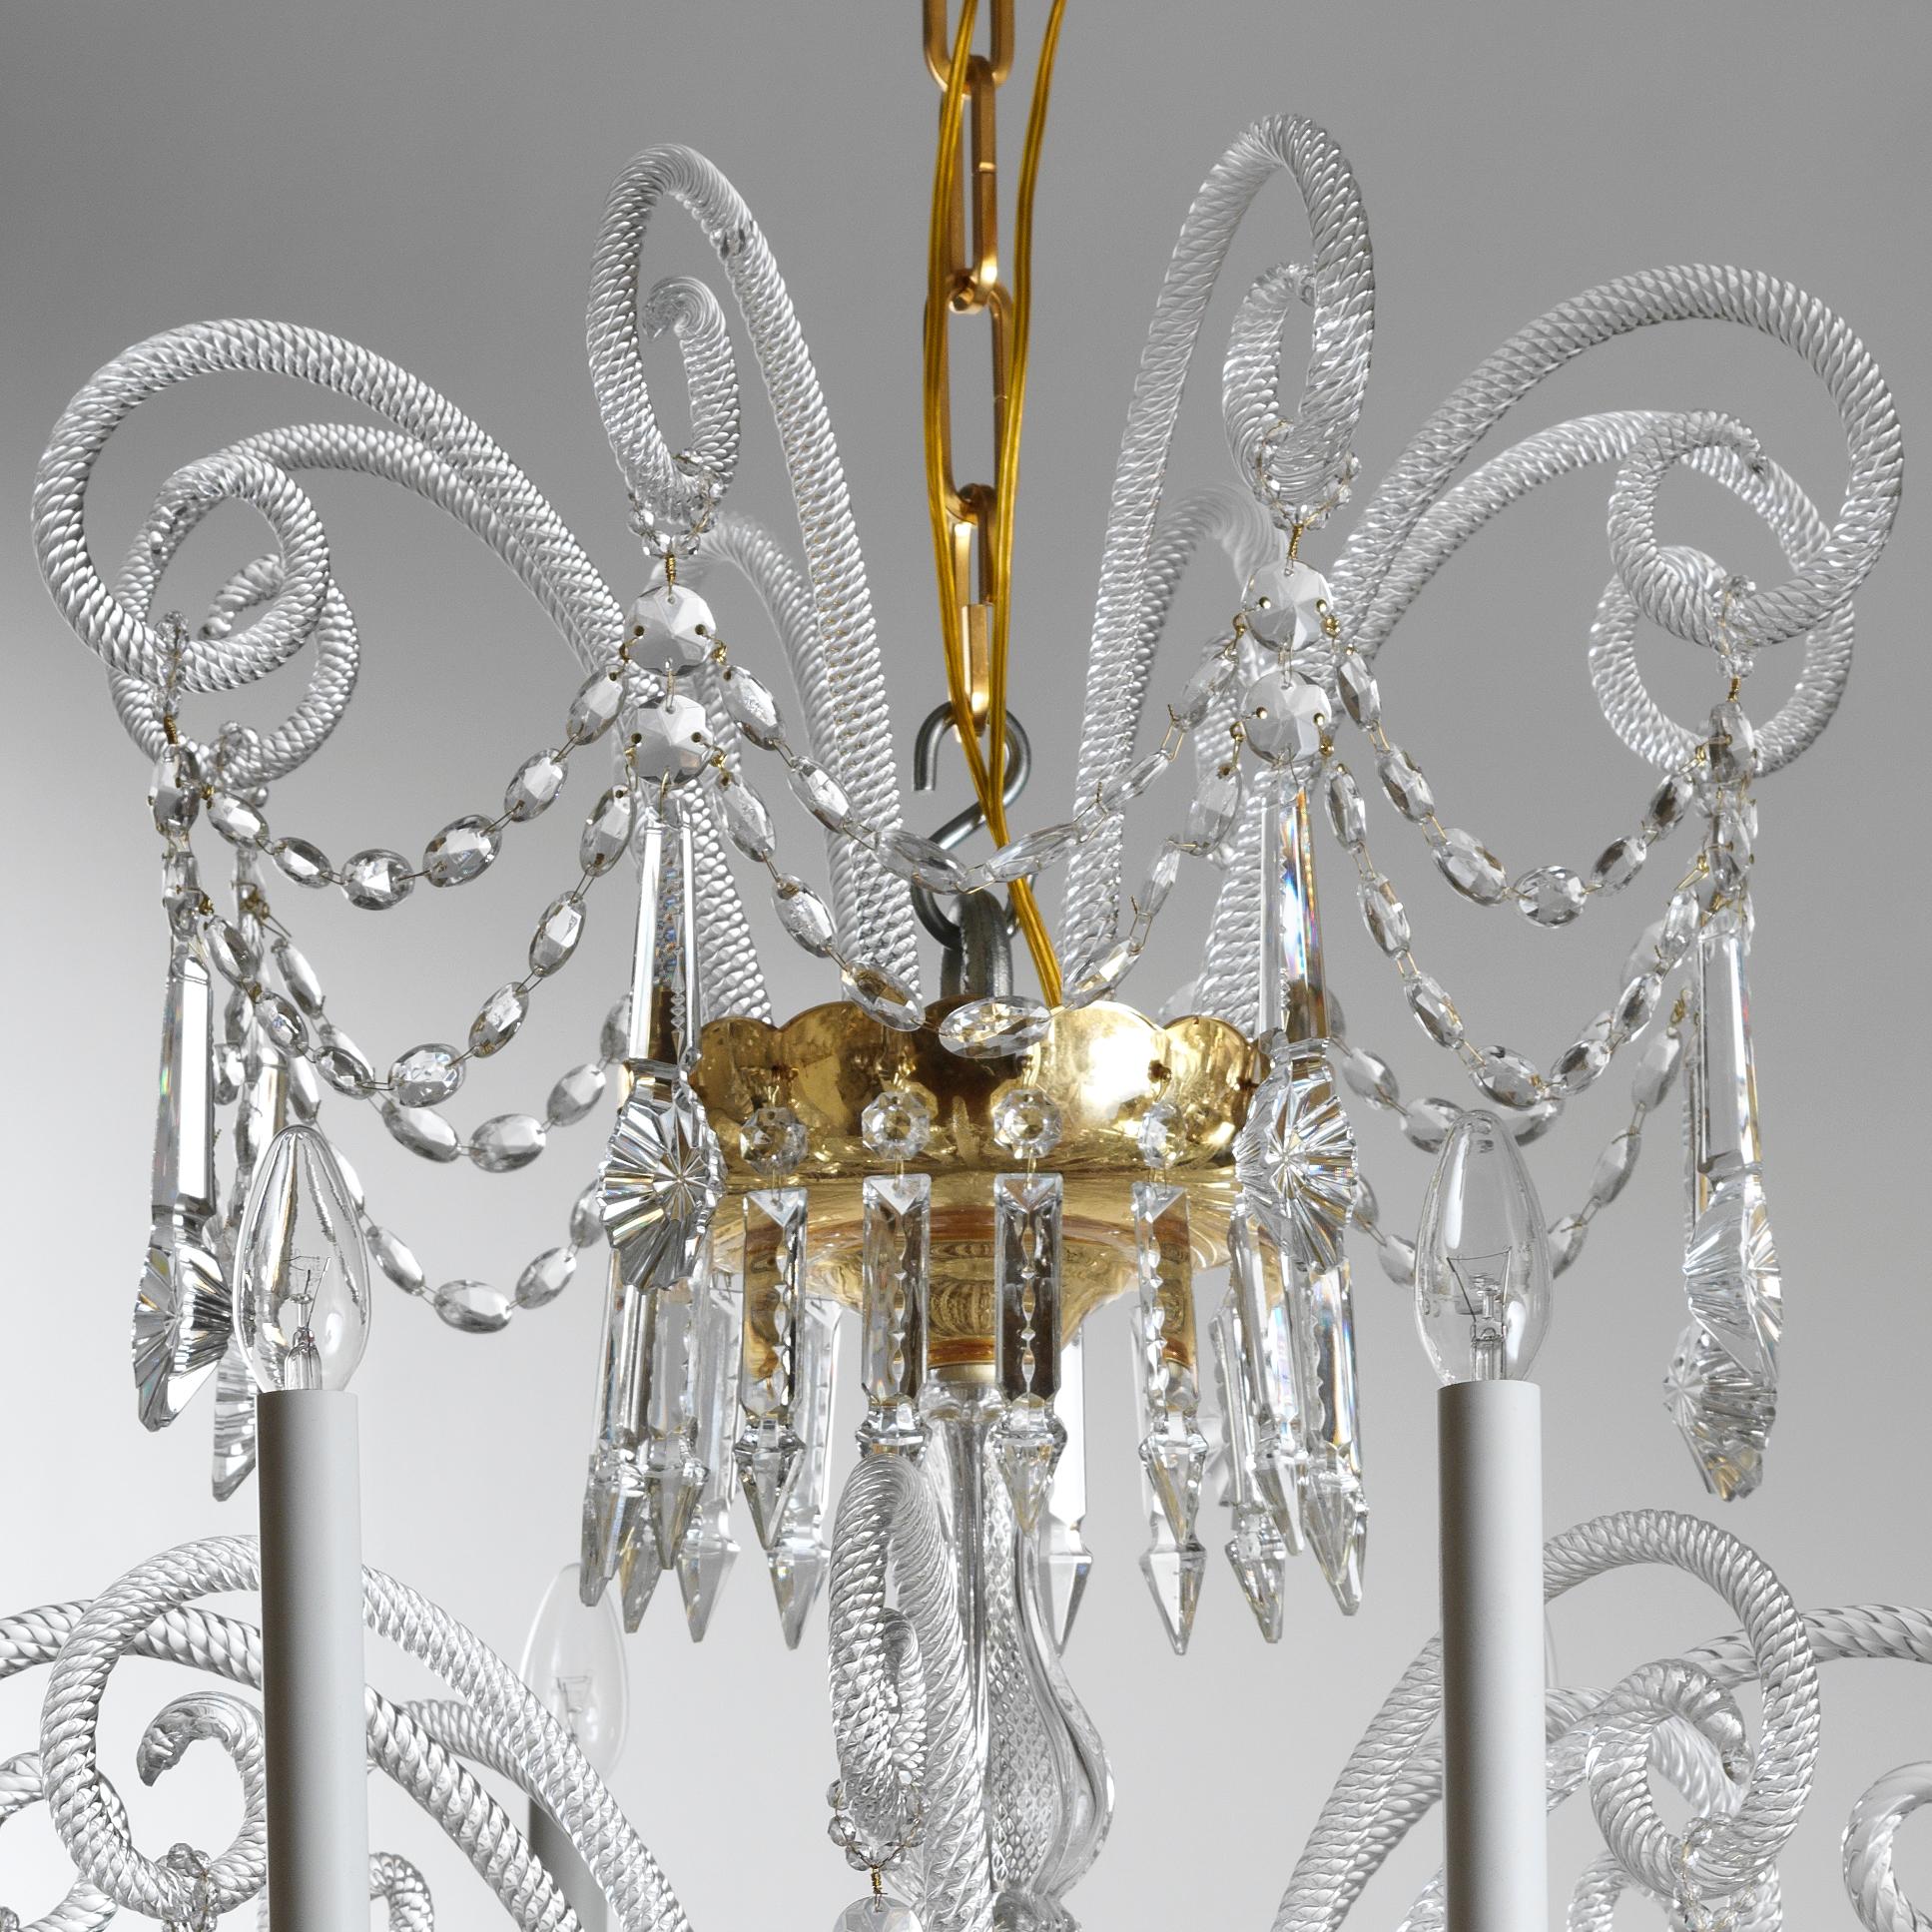 Dieser Kronleuchter aus Kristall und mundgeblasenem Glas im Stil des 18. Jahrhunderts von Gherardo Degli Albizzi ist in transparenter Farbe mit vergoldeten Schalen ausgeführt. Dieser Kronleuchter besteht aus drei Zweigschichten. Die obere Krone